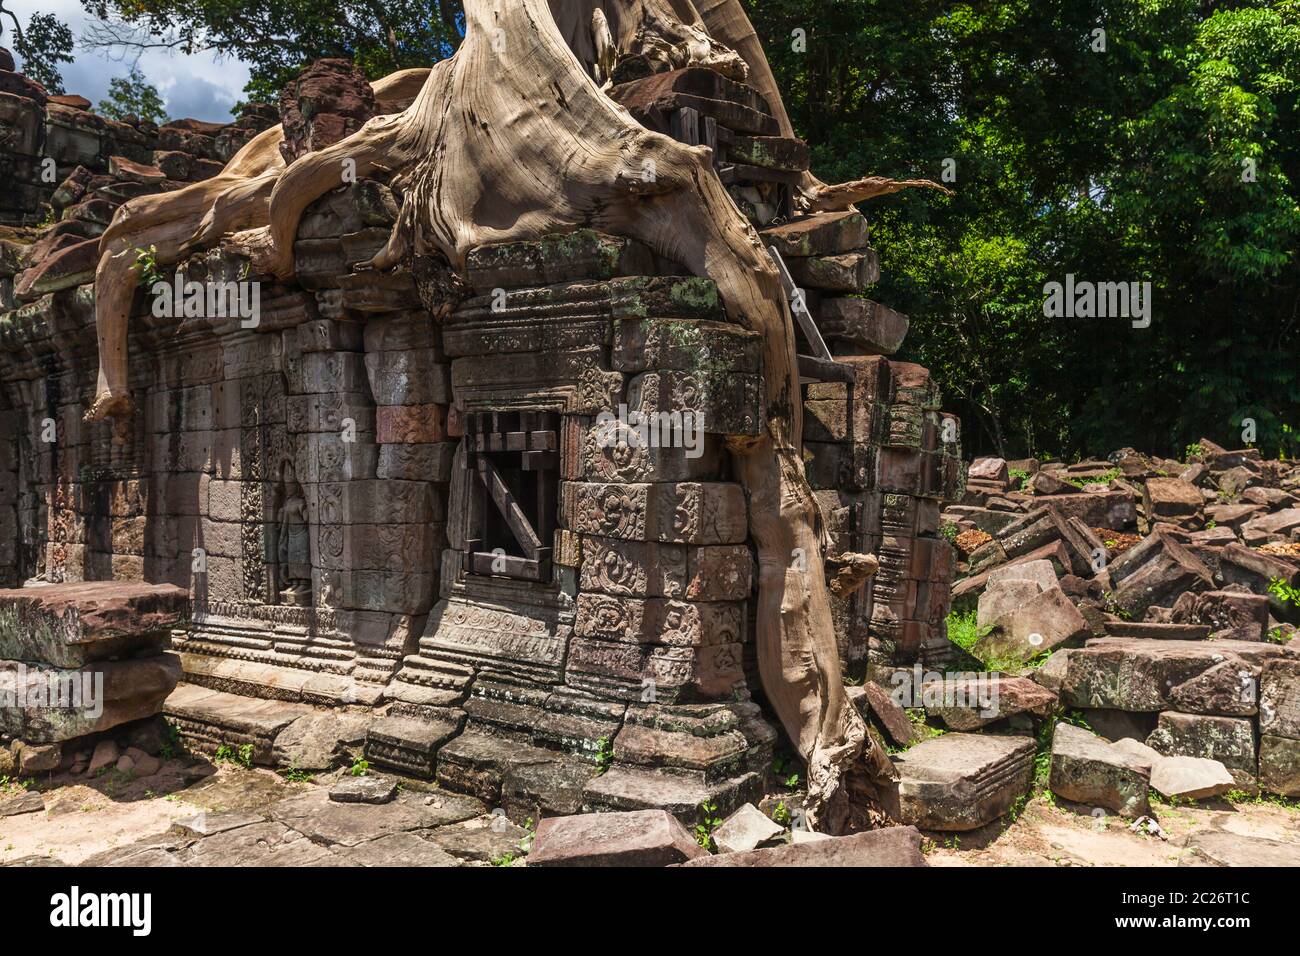 Templo de Preah Khan, corroído por la raíz de un árbol gigante, antigua capital del Imperio Khmer, Siem Reap, Camboya, Asia del sudeste, Asia Foto de stock